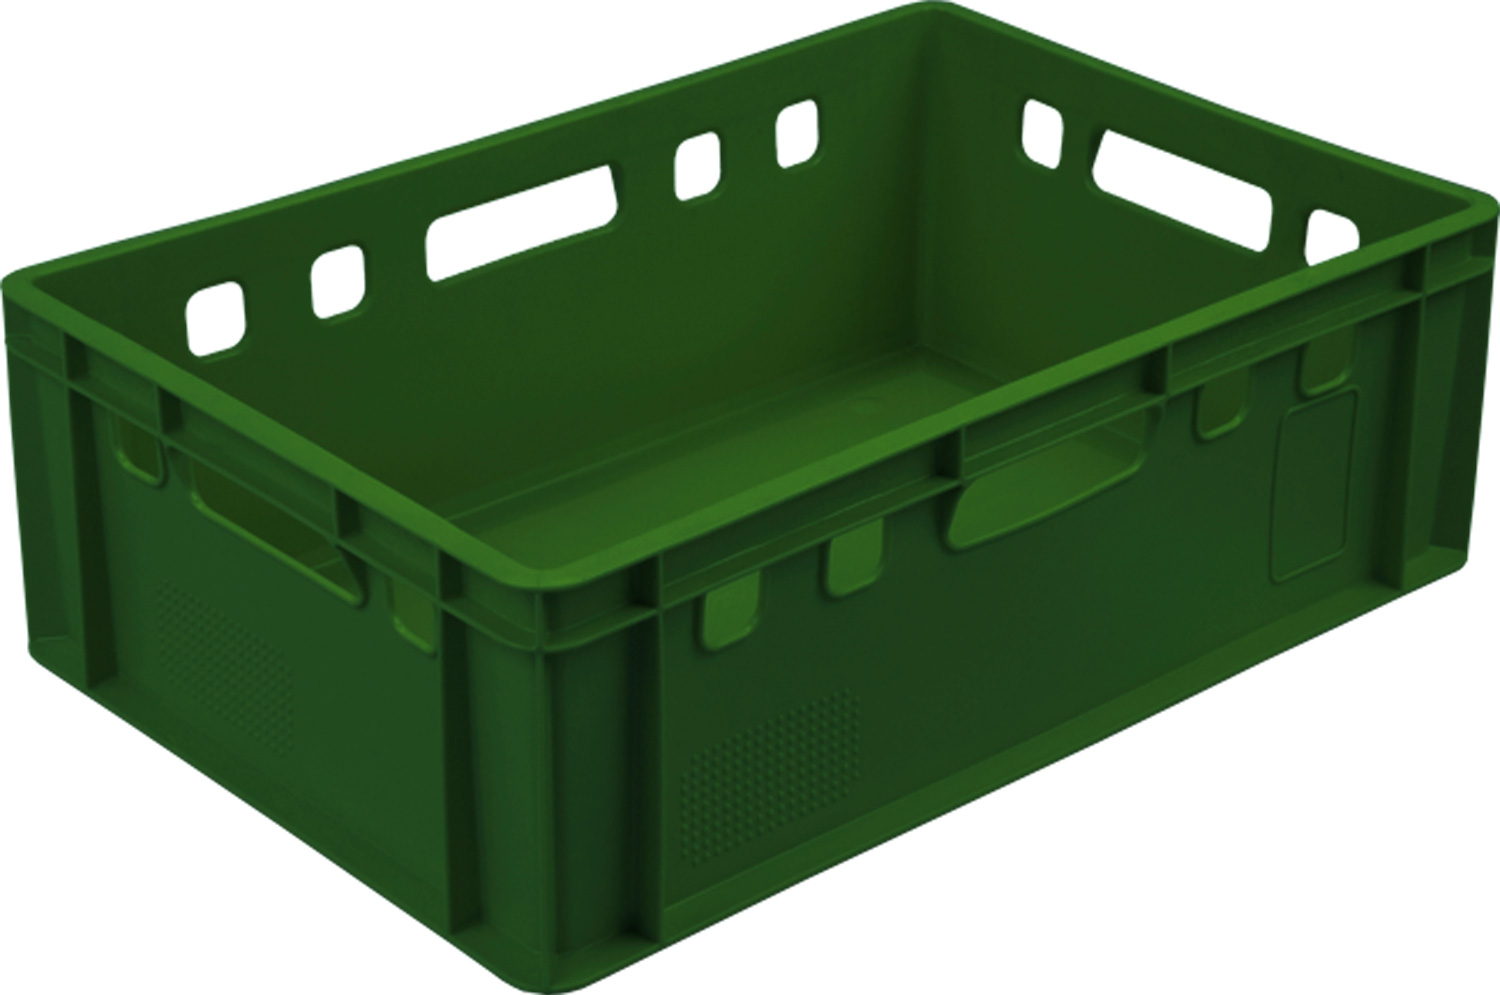 Ящик мясной 207 размером 600х400х200 мм сплошной Е2 зеленый пластиковый пищевой